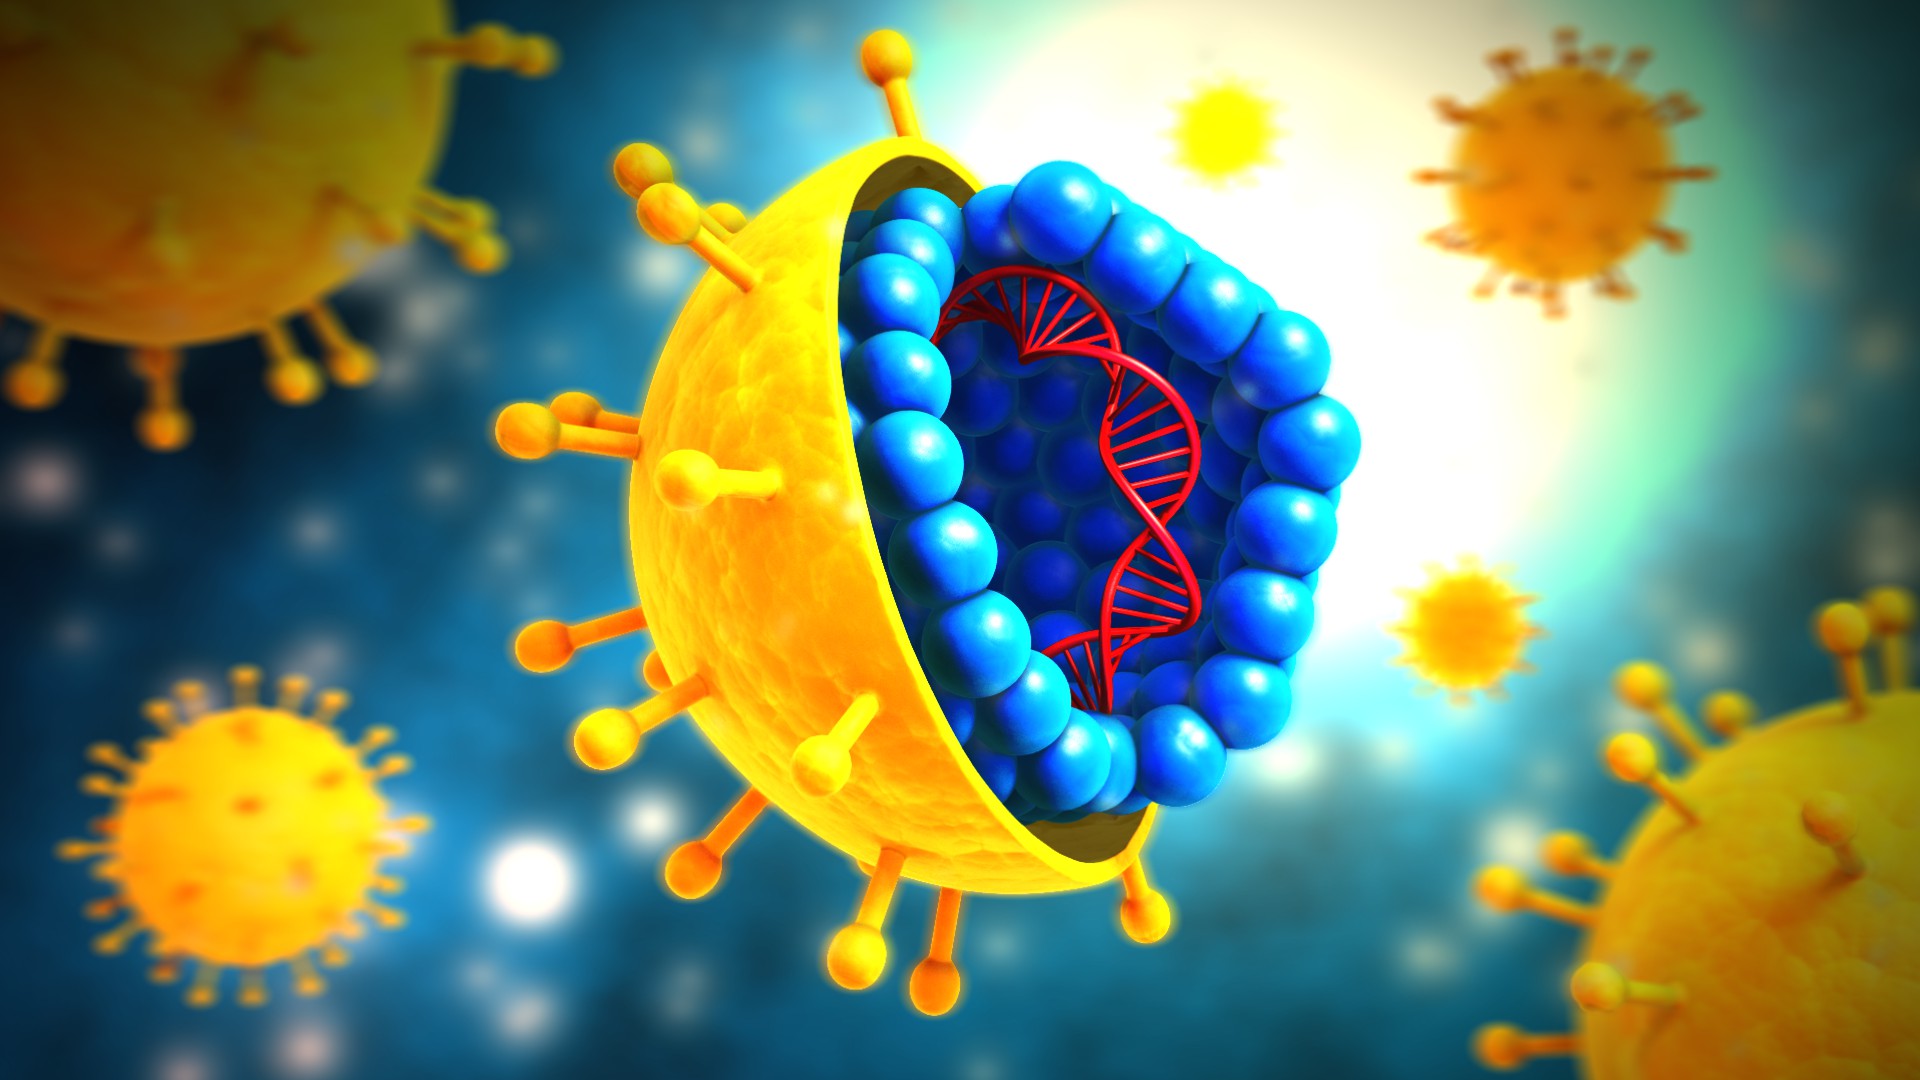 Гепатит в мире. Коронавирус РНК вирус. Наследственный аппарат вирусов. Гепатит c. Вирусы картинки.